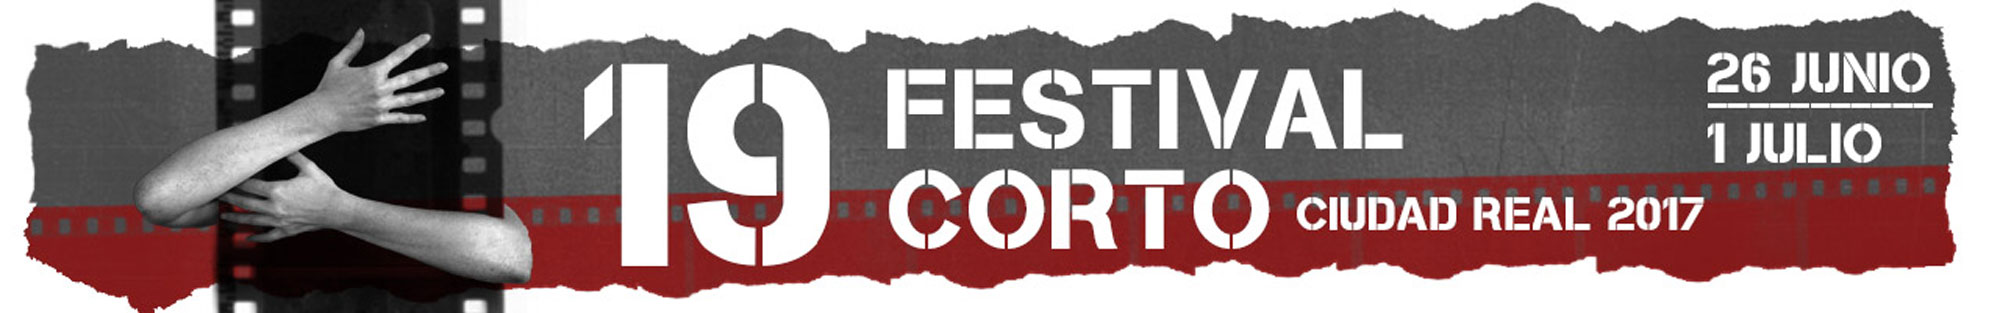 Sección no oficial 2017 - Festival Corto Ciudad Real